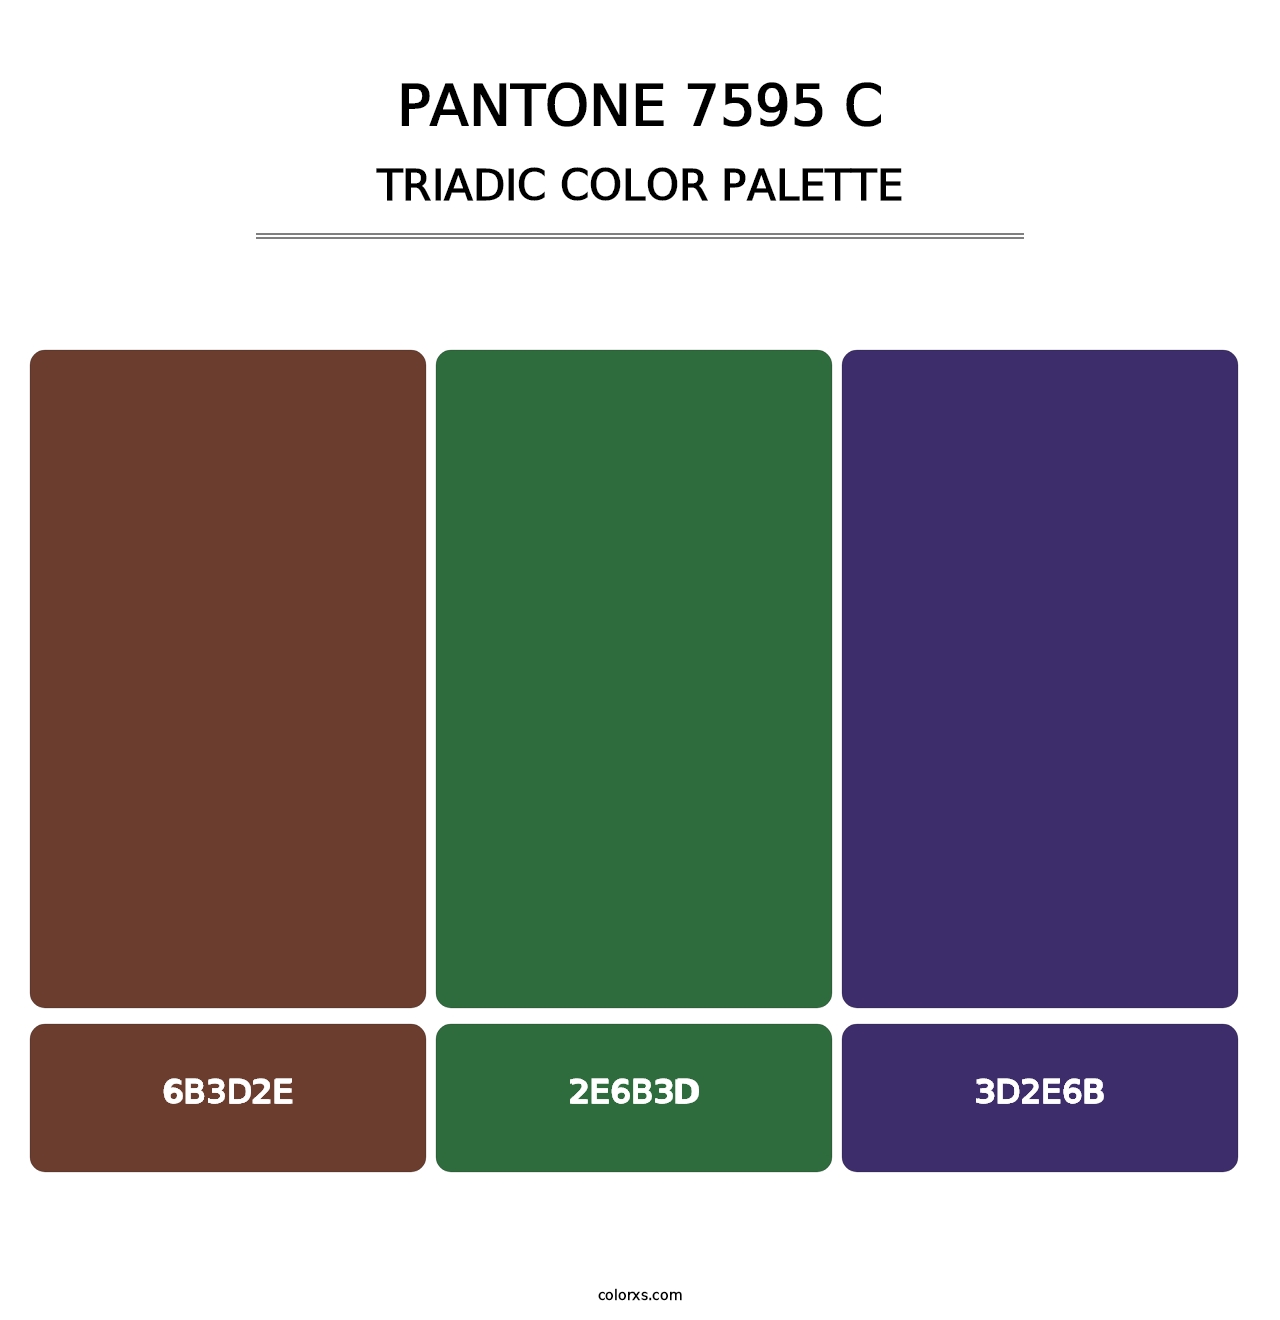 PANTONE 7595 C - Triadic Color Palette